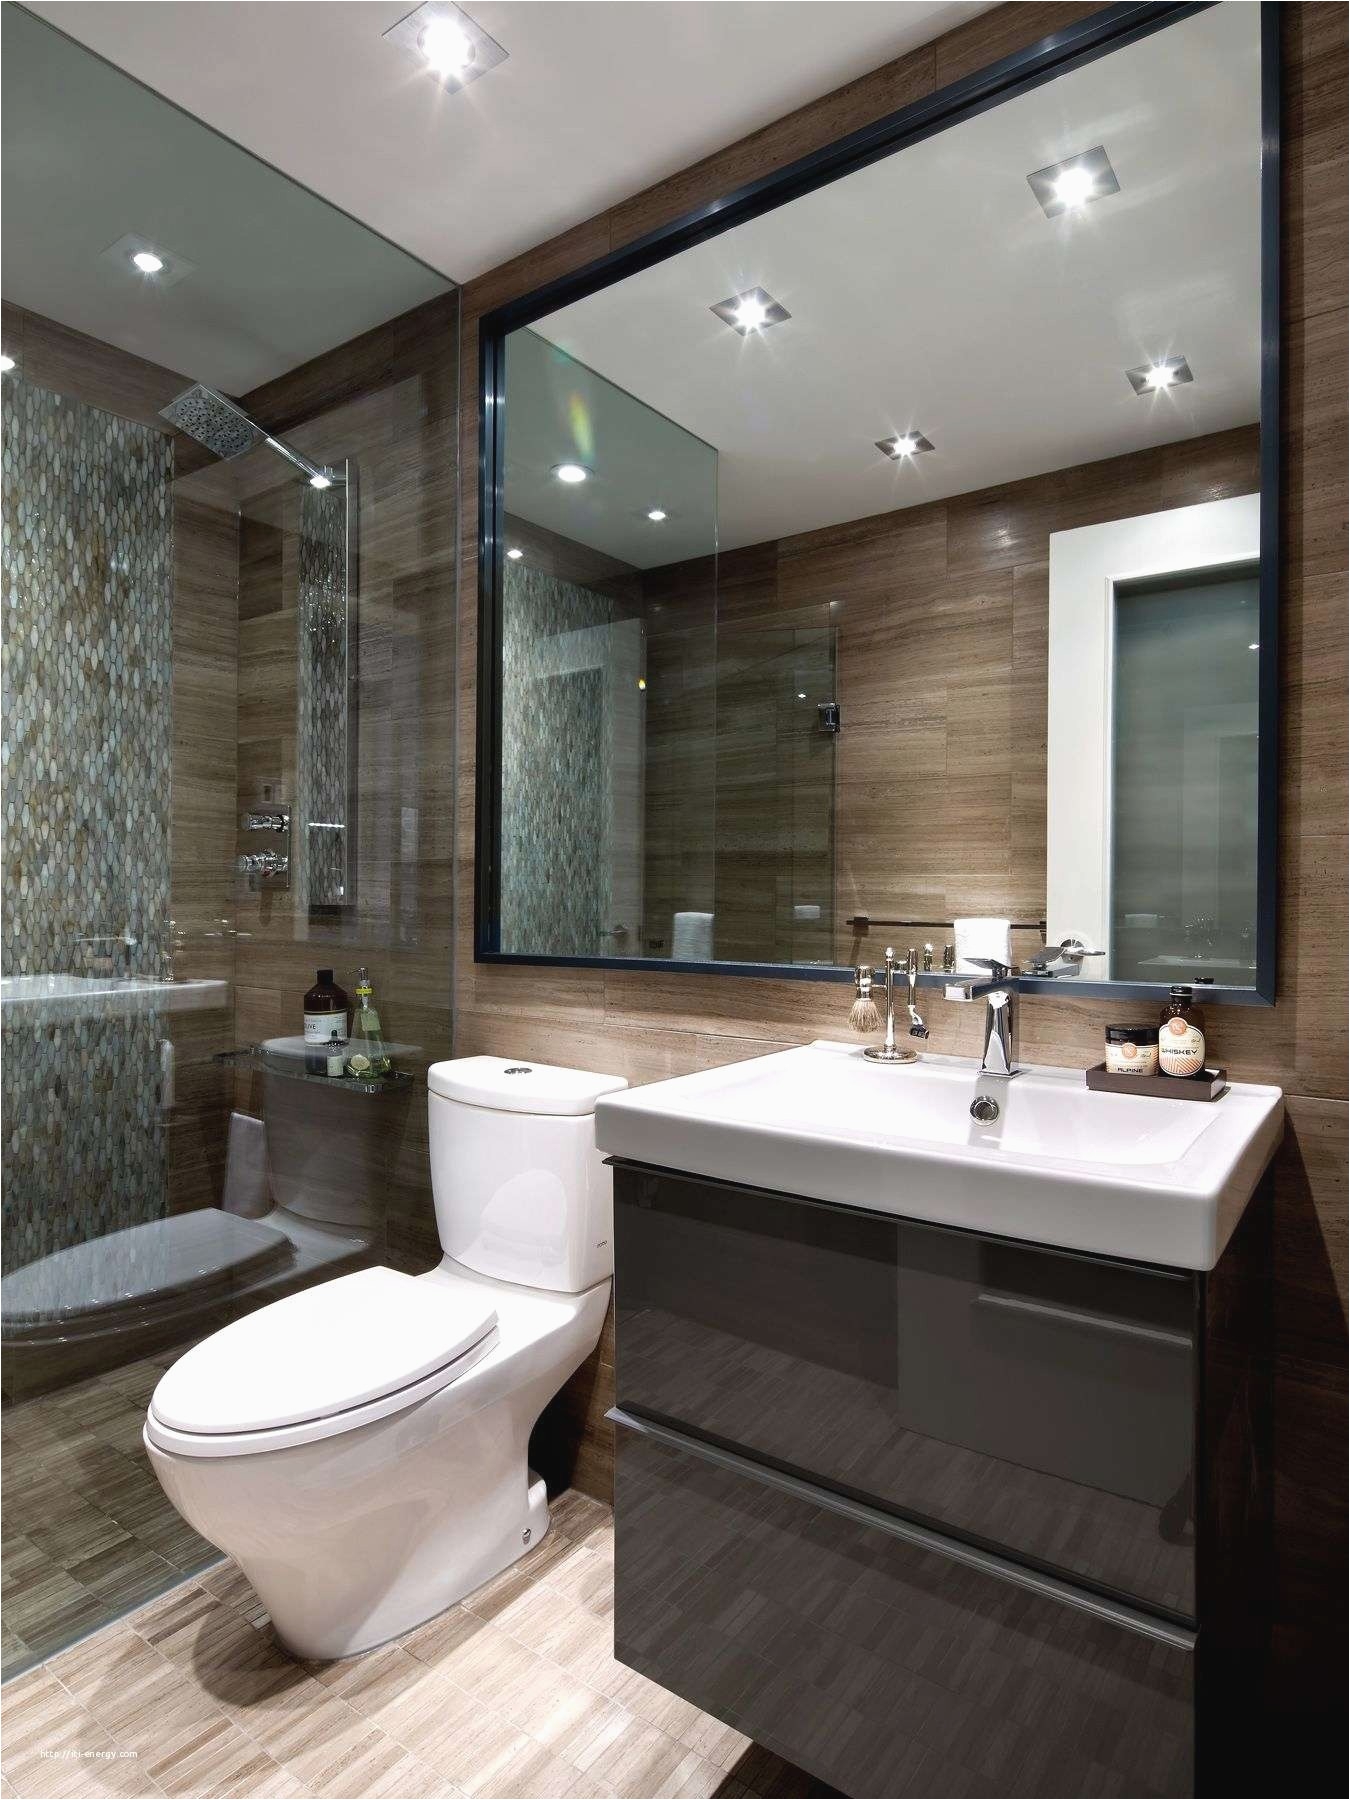 Bathroom Design Ideas Nz 23 Bathroom Design Ideas Nz norwin Home Design